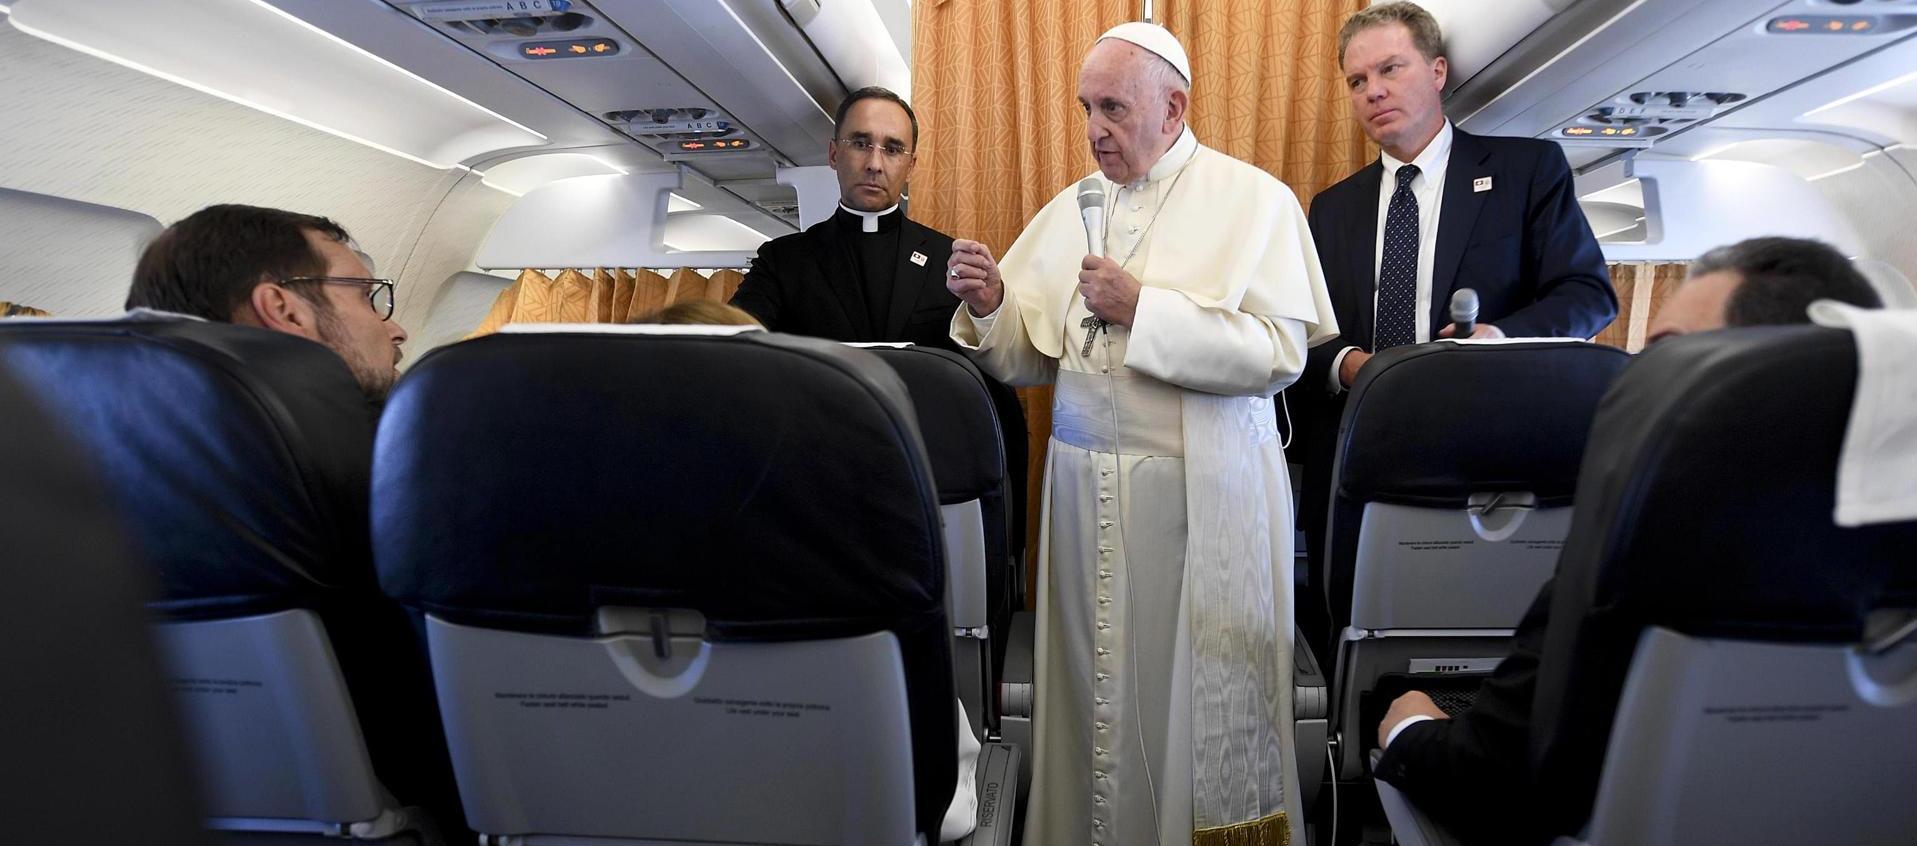 El Papa Francisco atendiendo a la prensa en un viaje pastoral. 